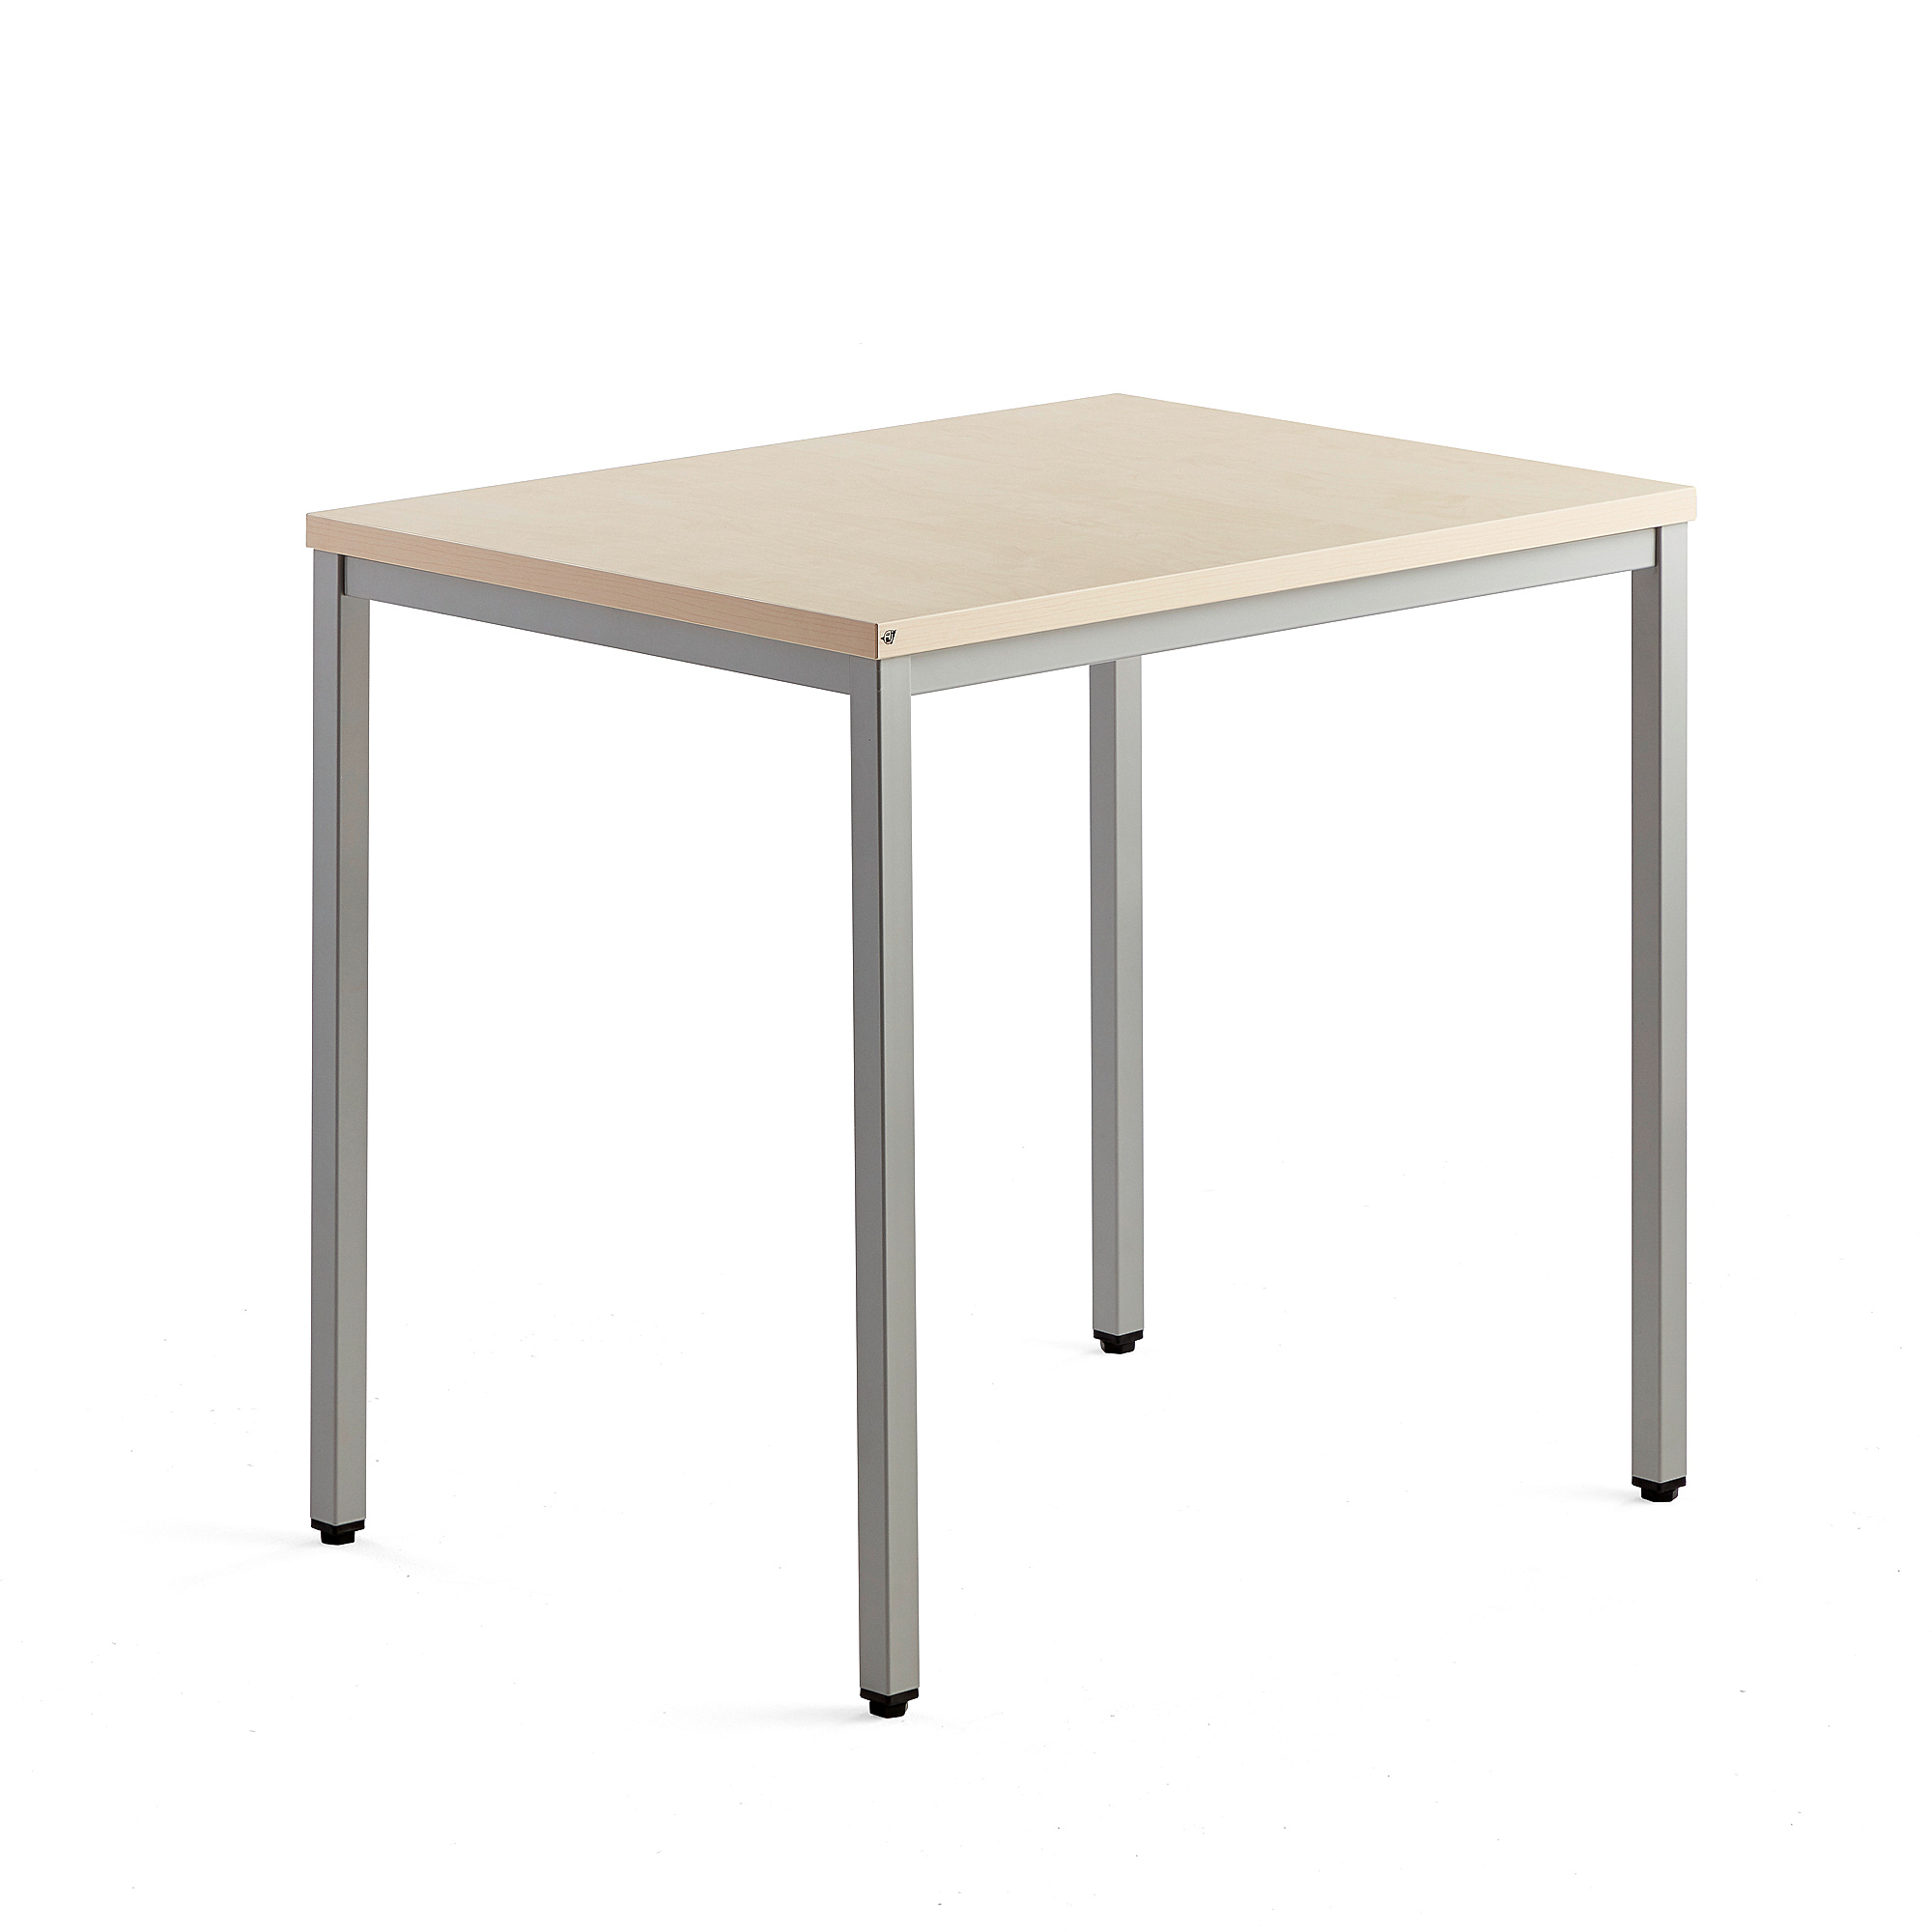 Přídavný stůl QBUS, 4 nohy, 800x600 mm, stříbrný rám, bříza